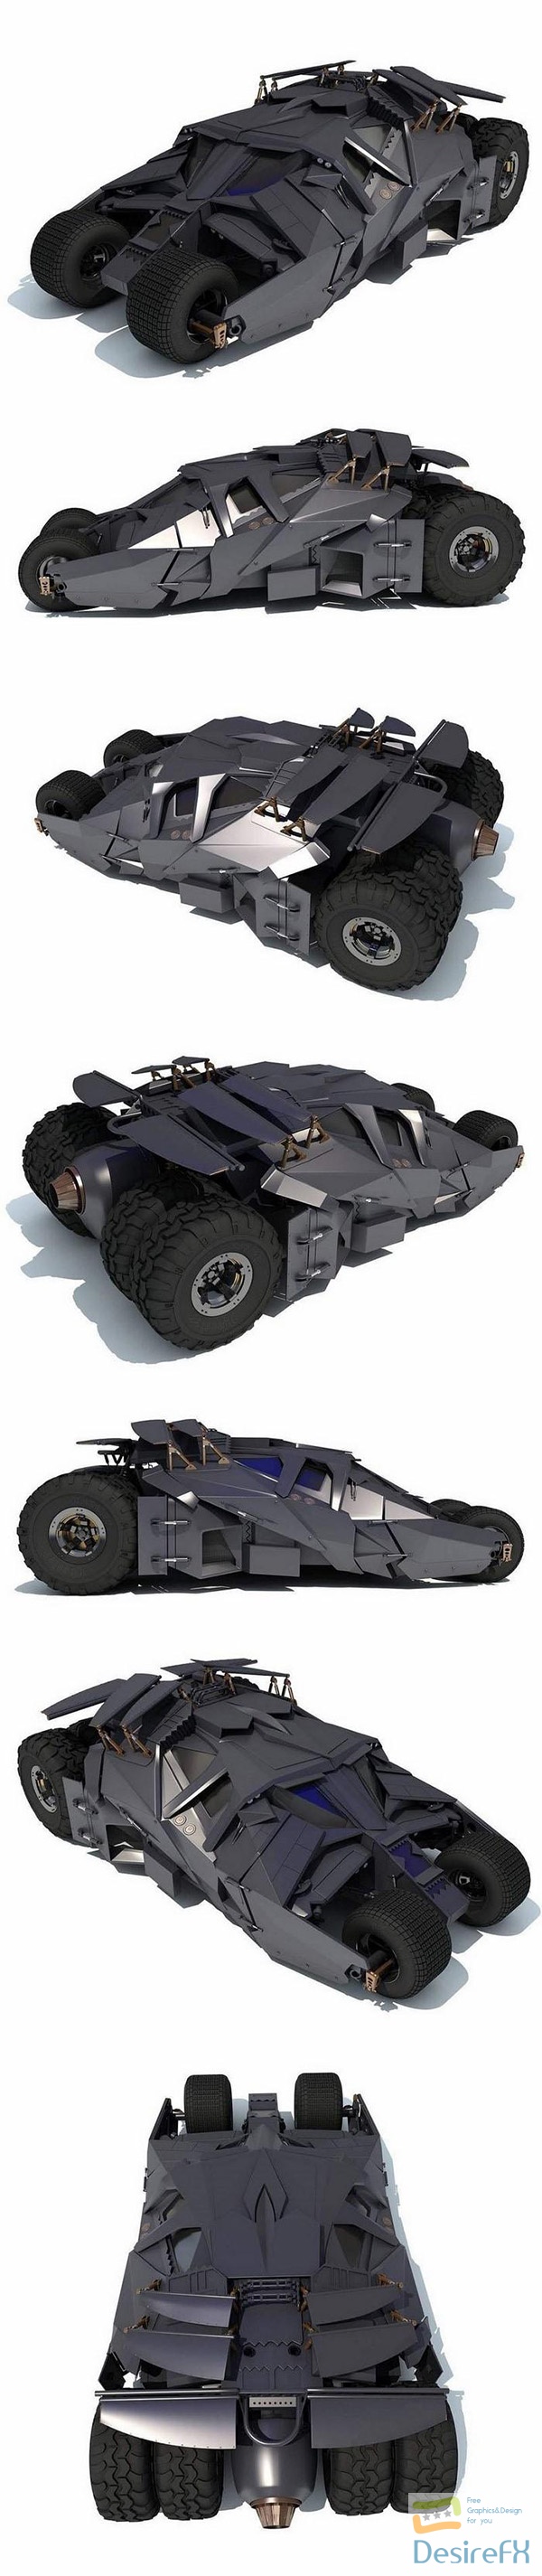 Tumbler Batmobile 3D Model